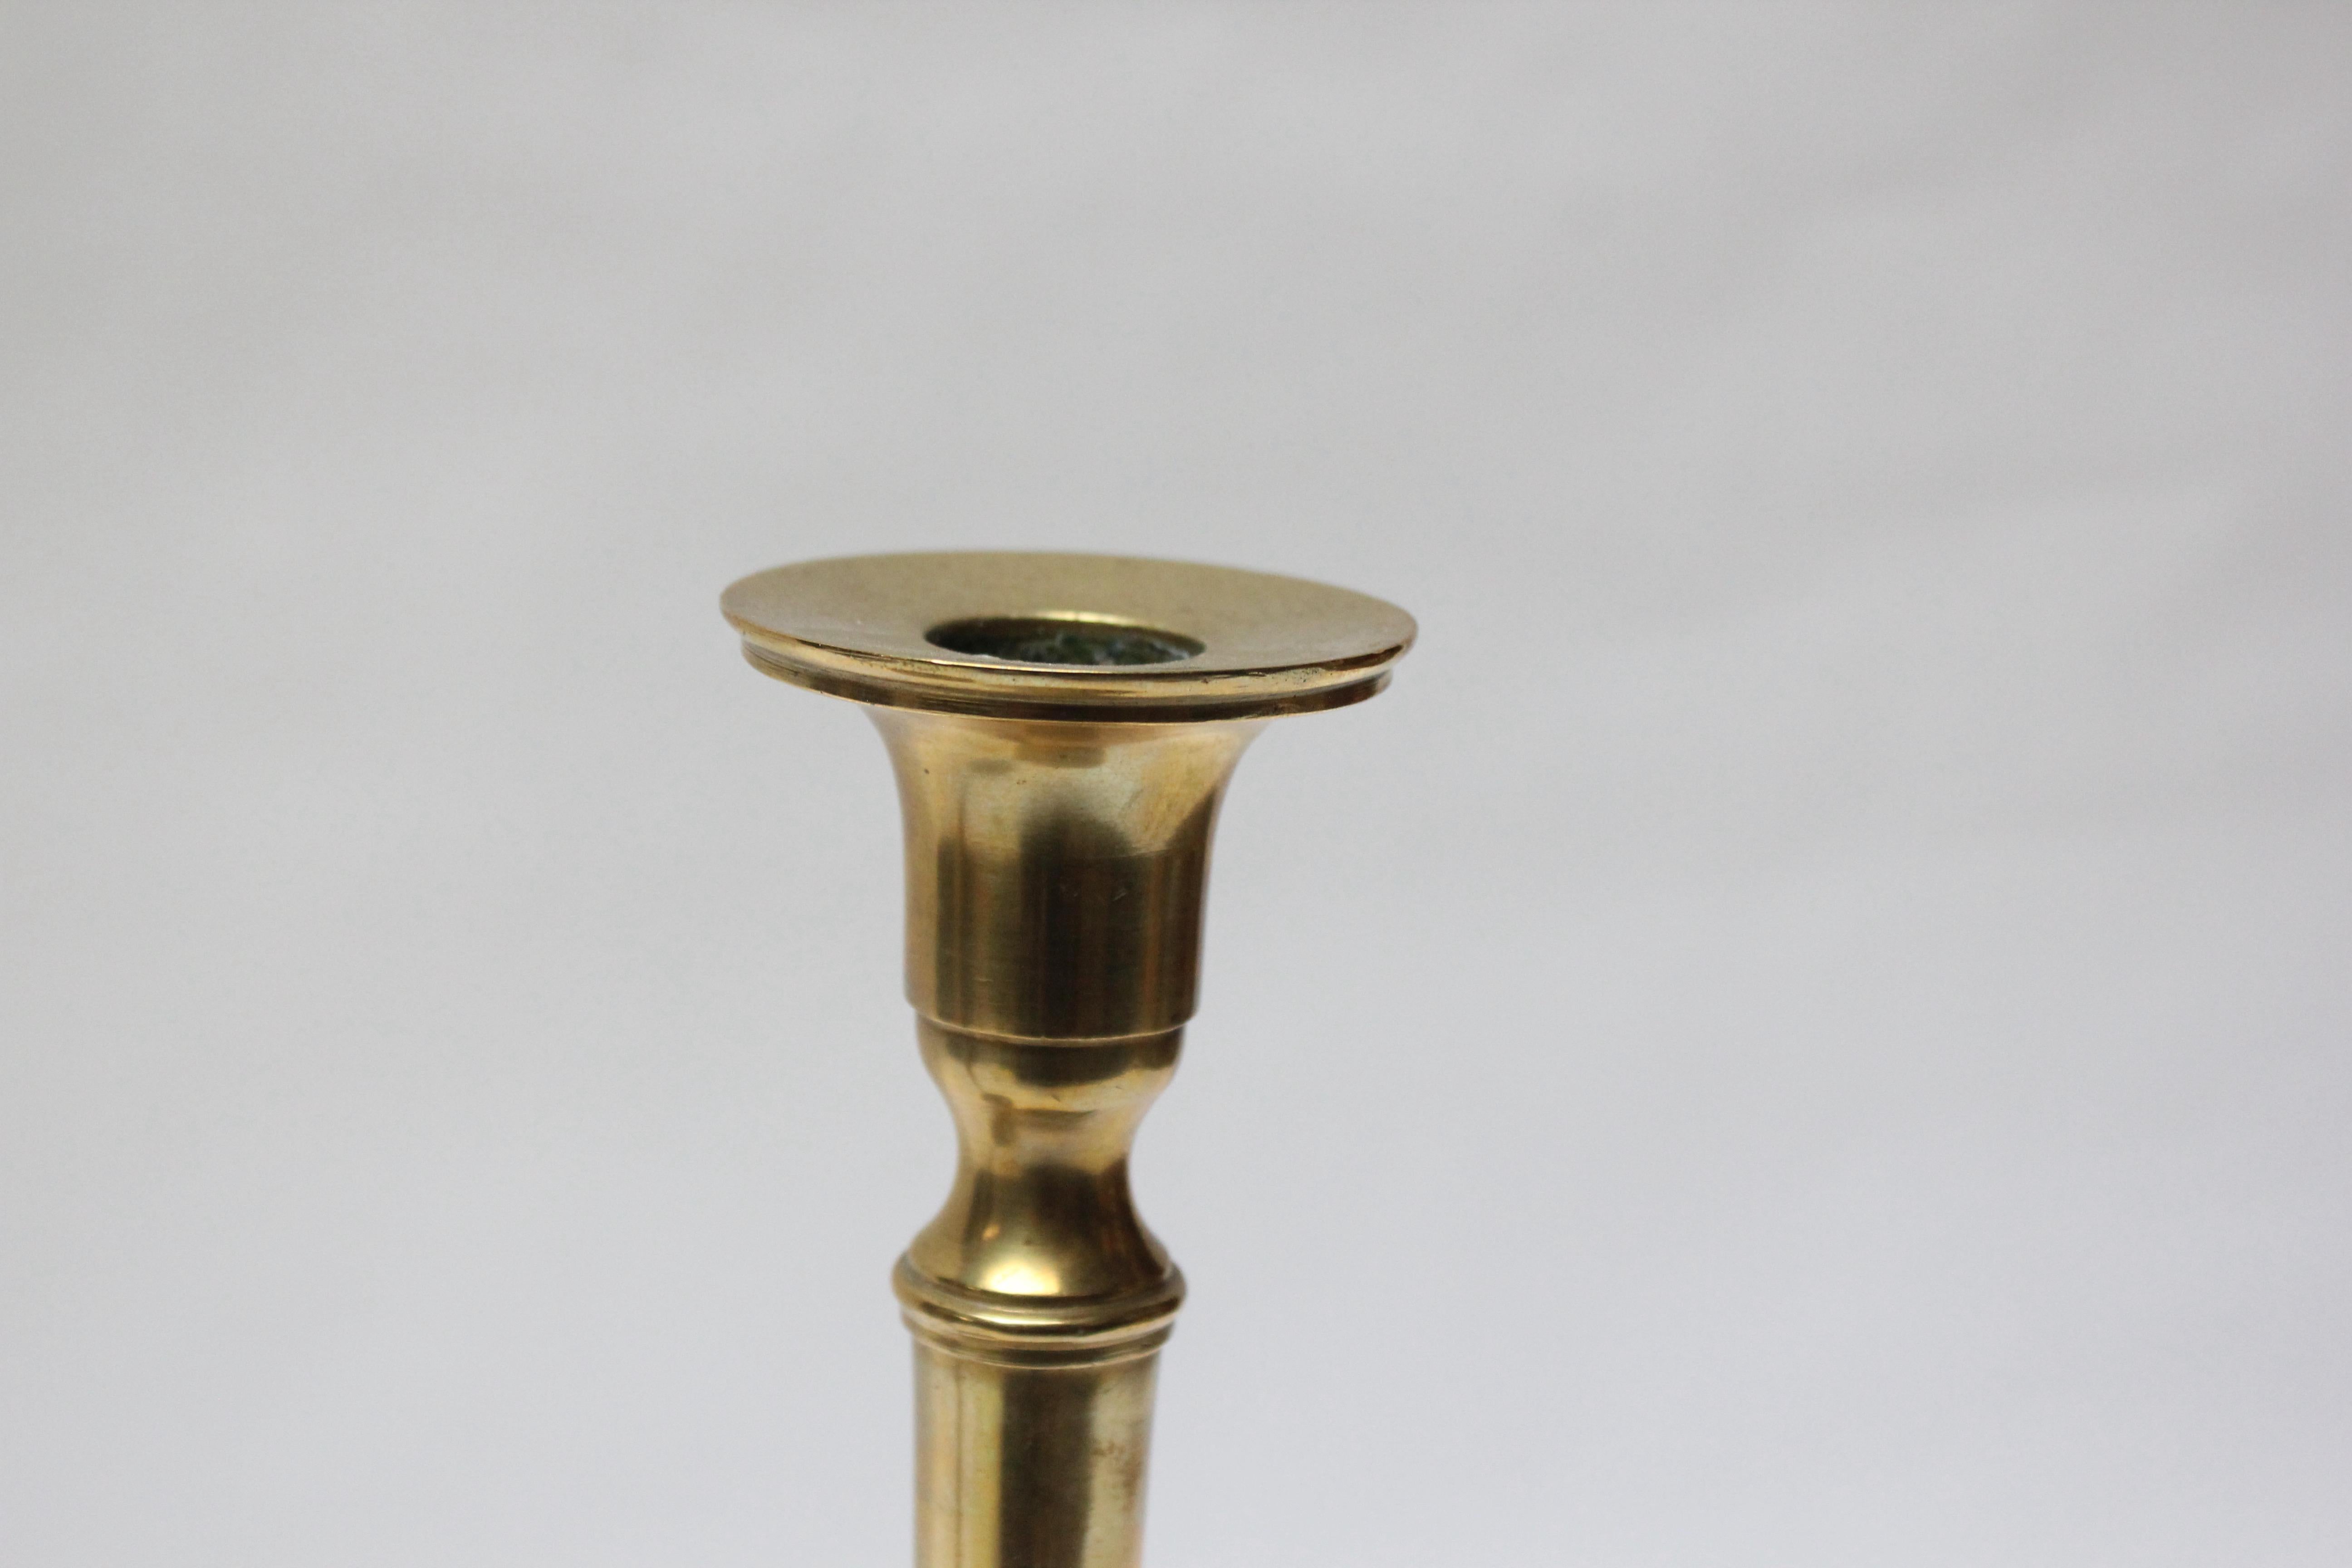 Pair of Tall Nashua Brass Art & Crafts Turned Brass Candlesticks 7